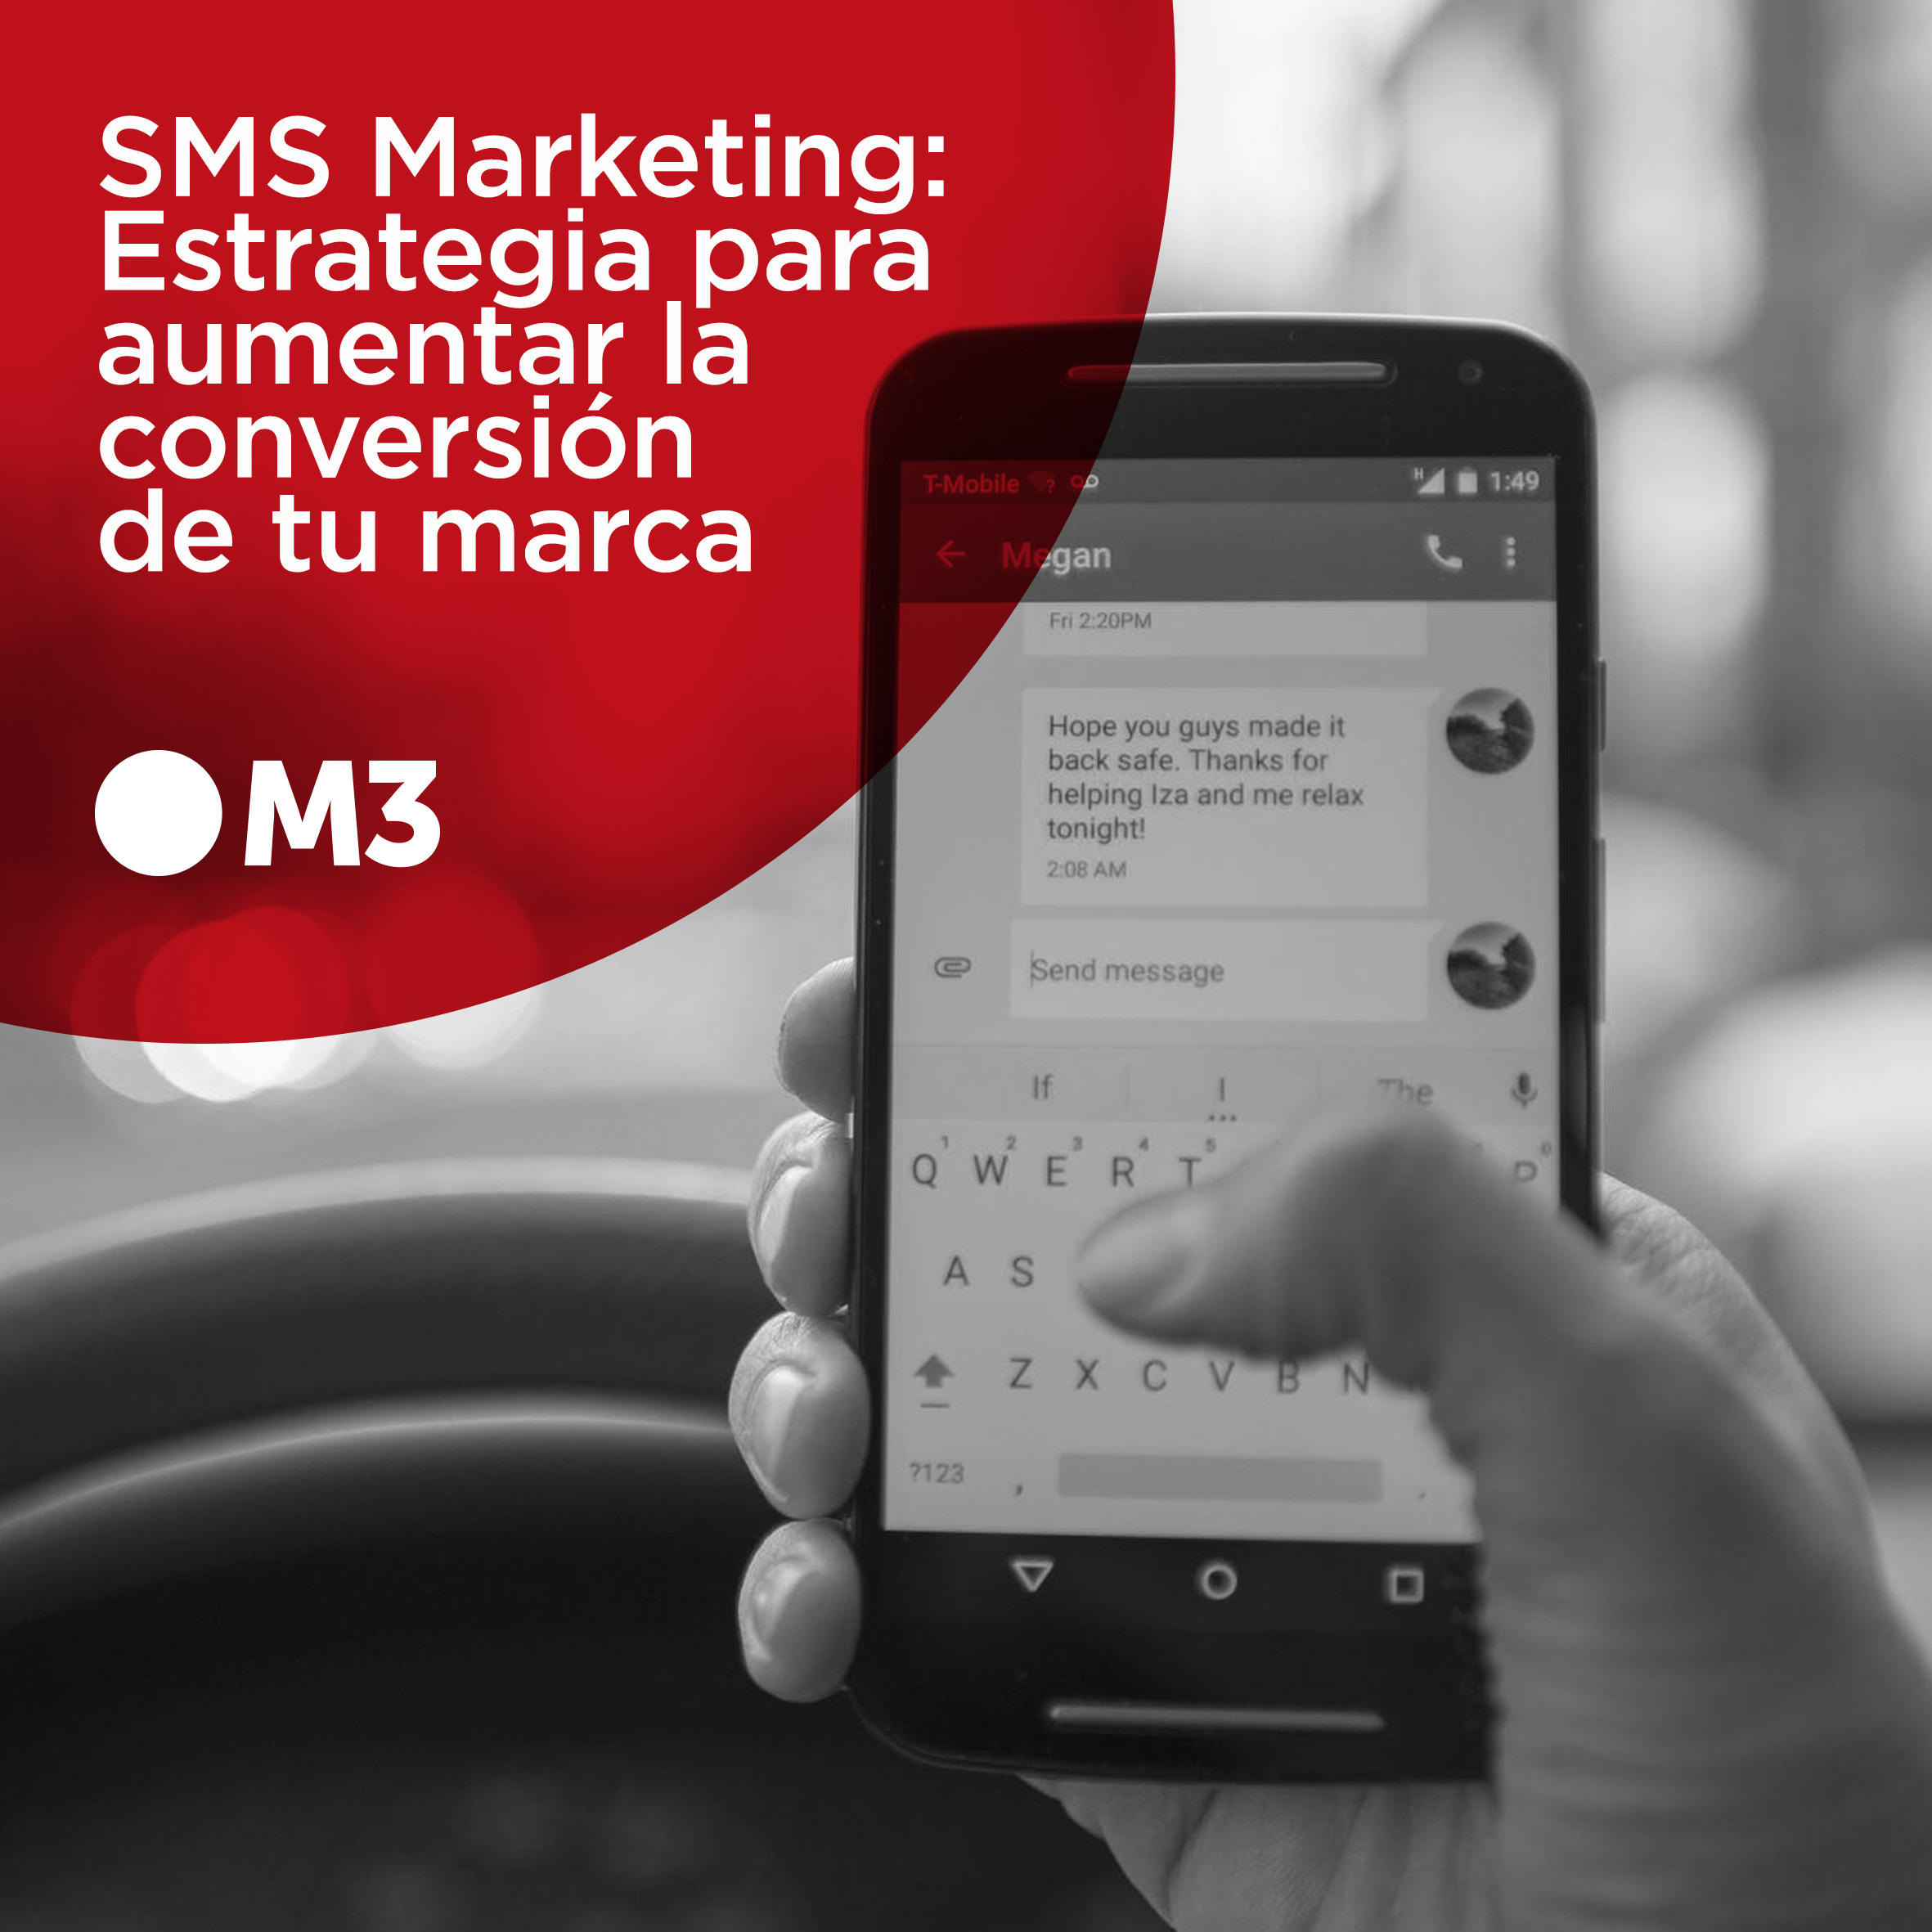 SMS Marketing: Estrategia para aumentar la conversión de tu marca